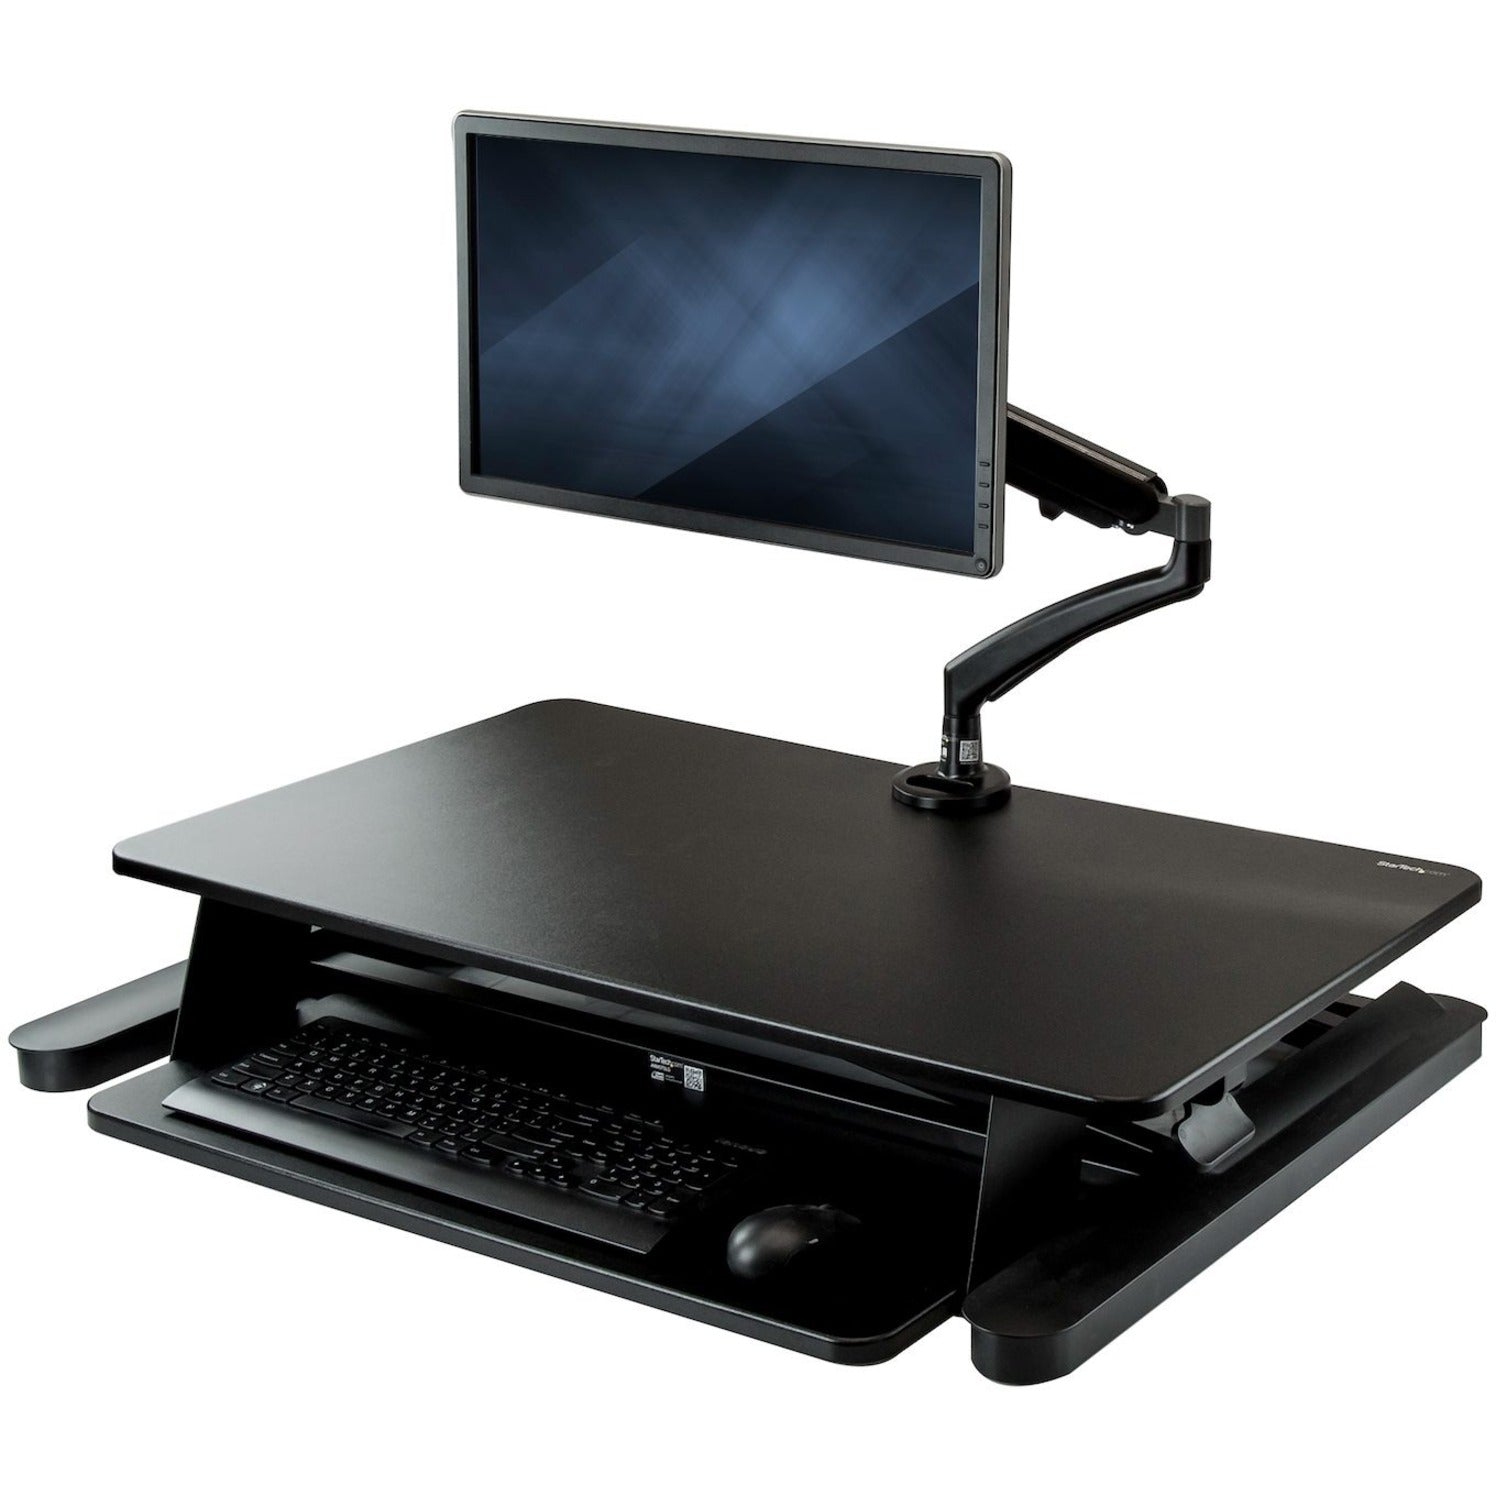 StarTech.com BNDSTSLGSLIM Multipurpose Desktop Riser, Sit-Stand Desk Converter with Monitor Arm, Up to 26", Pneumatic Adjustment, Cable Management, Black